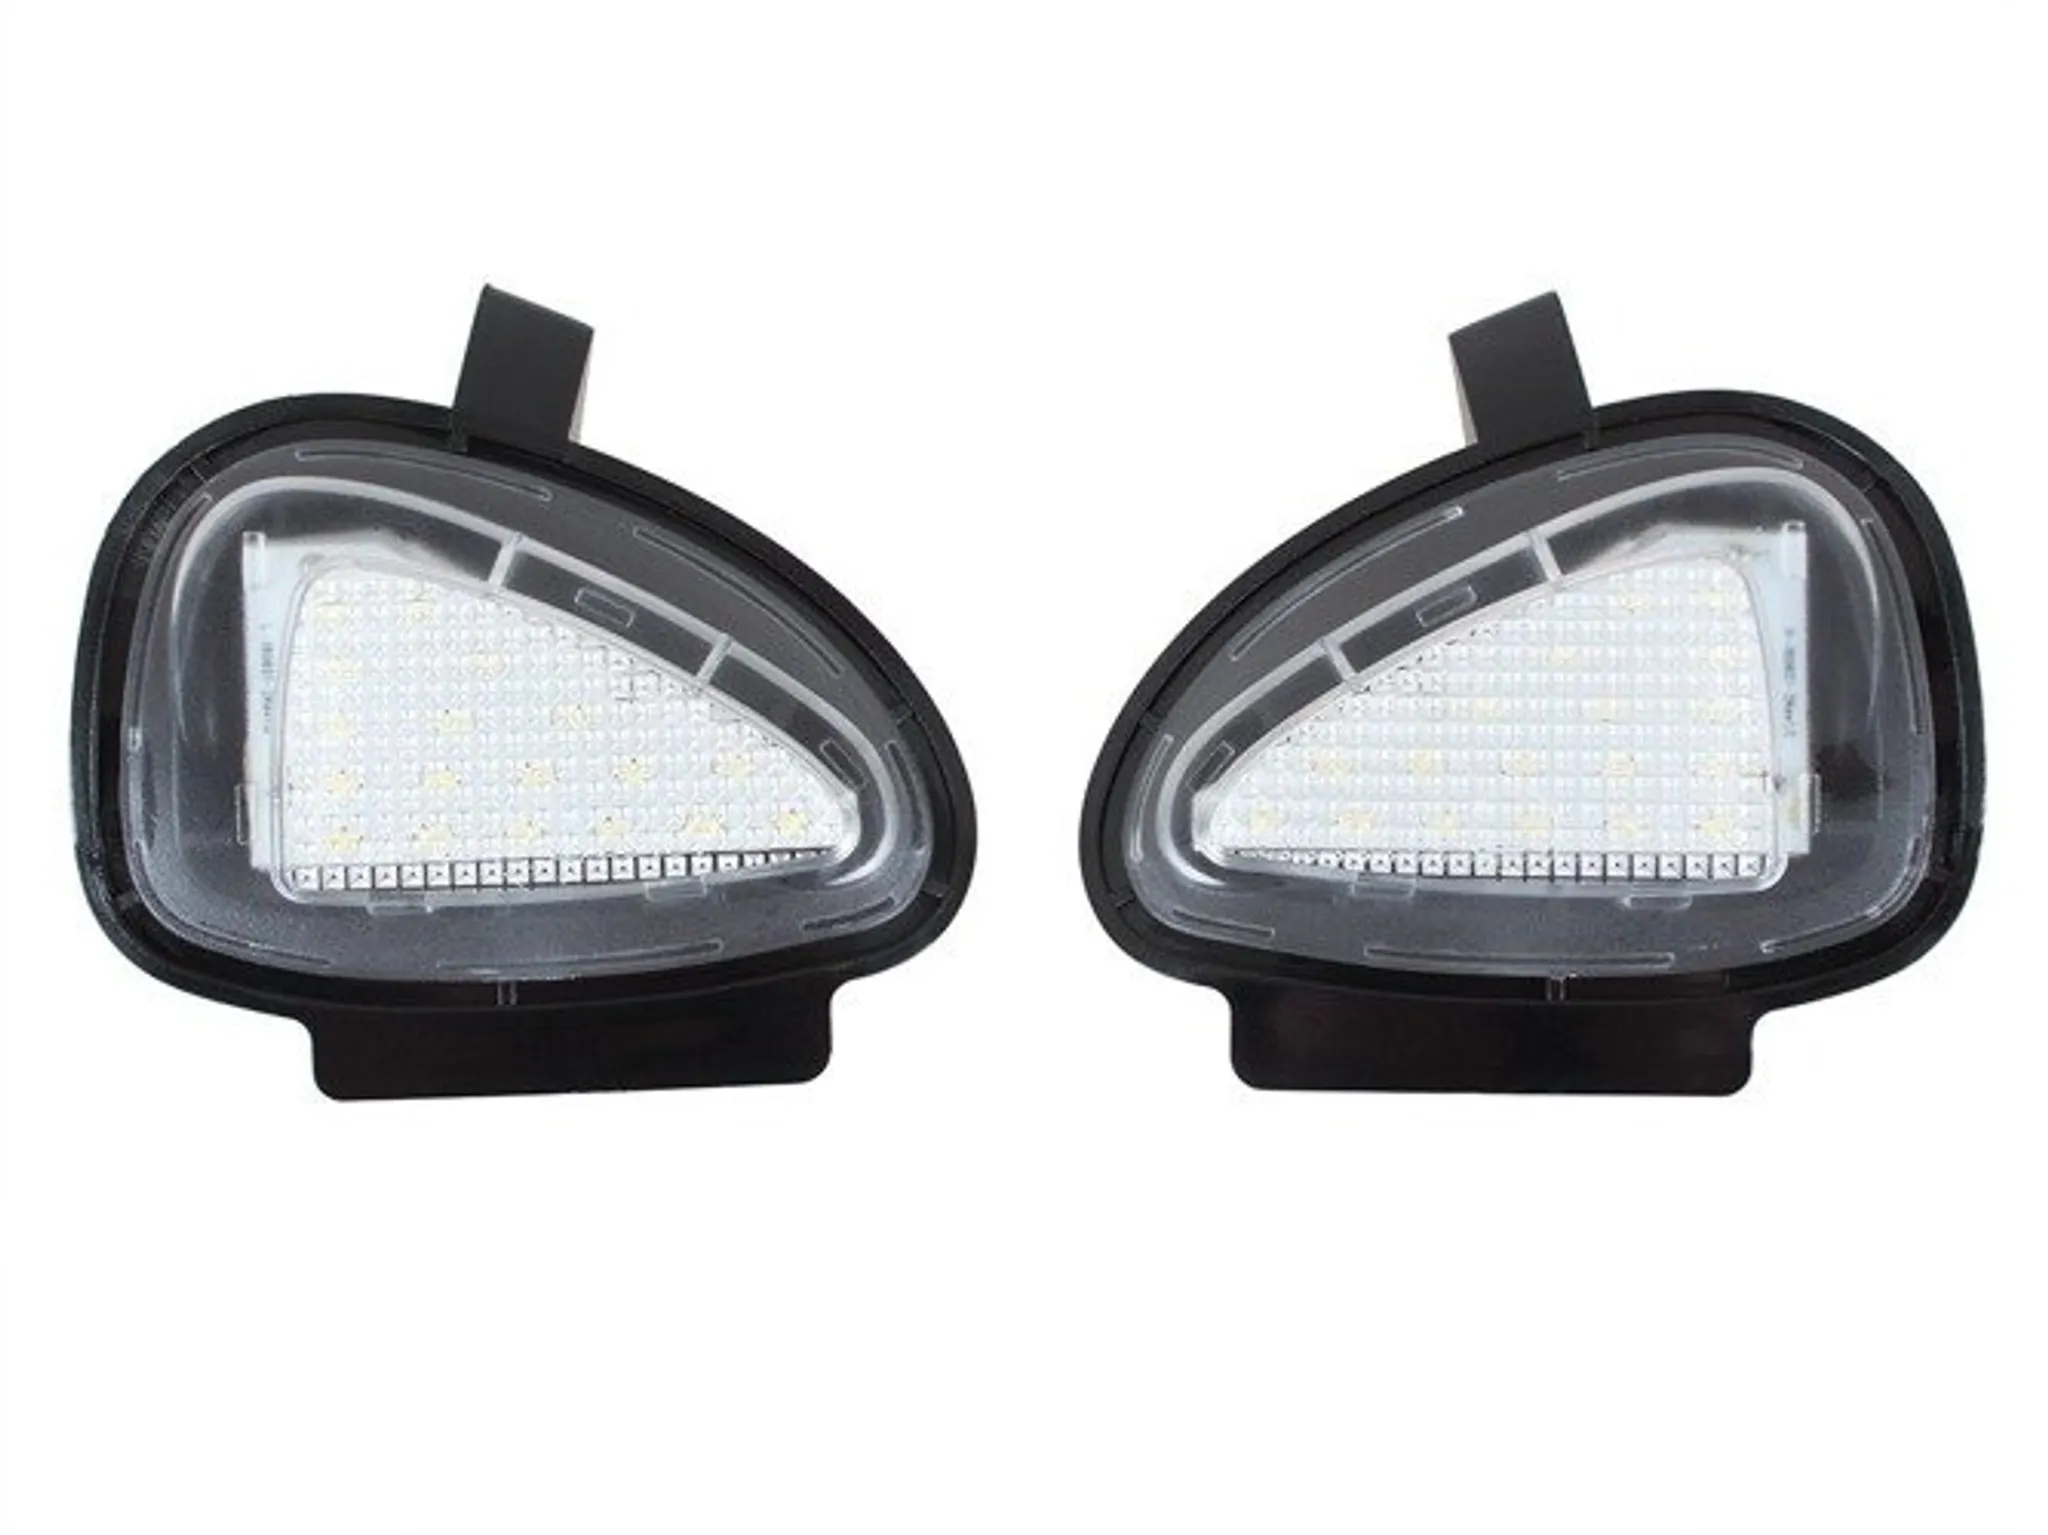 2x LED Umfeldbeleuchtung Spiegel 18 SMD für VW Golf VI 6 Jetta